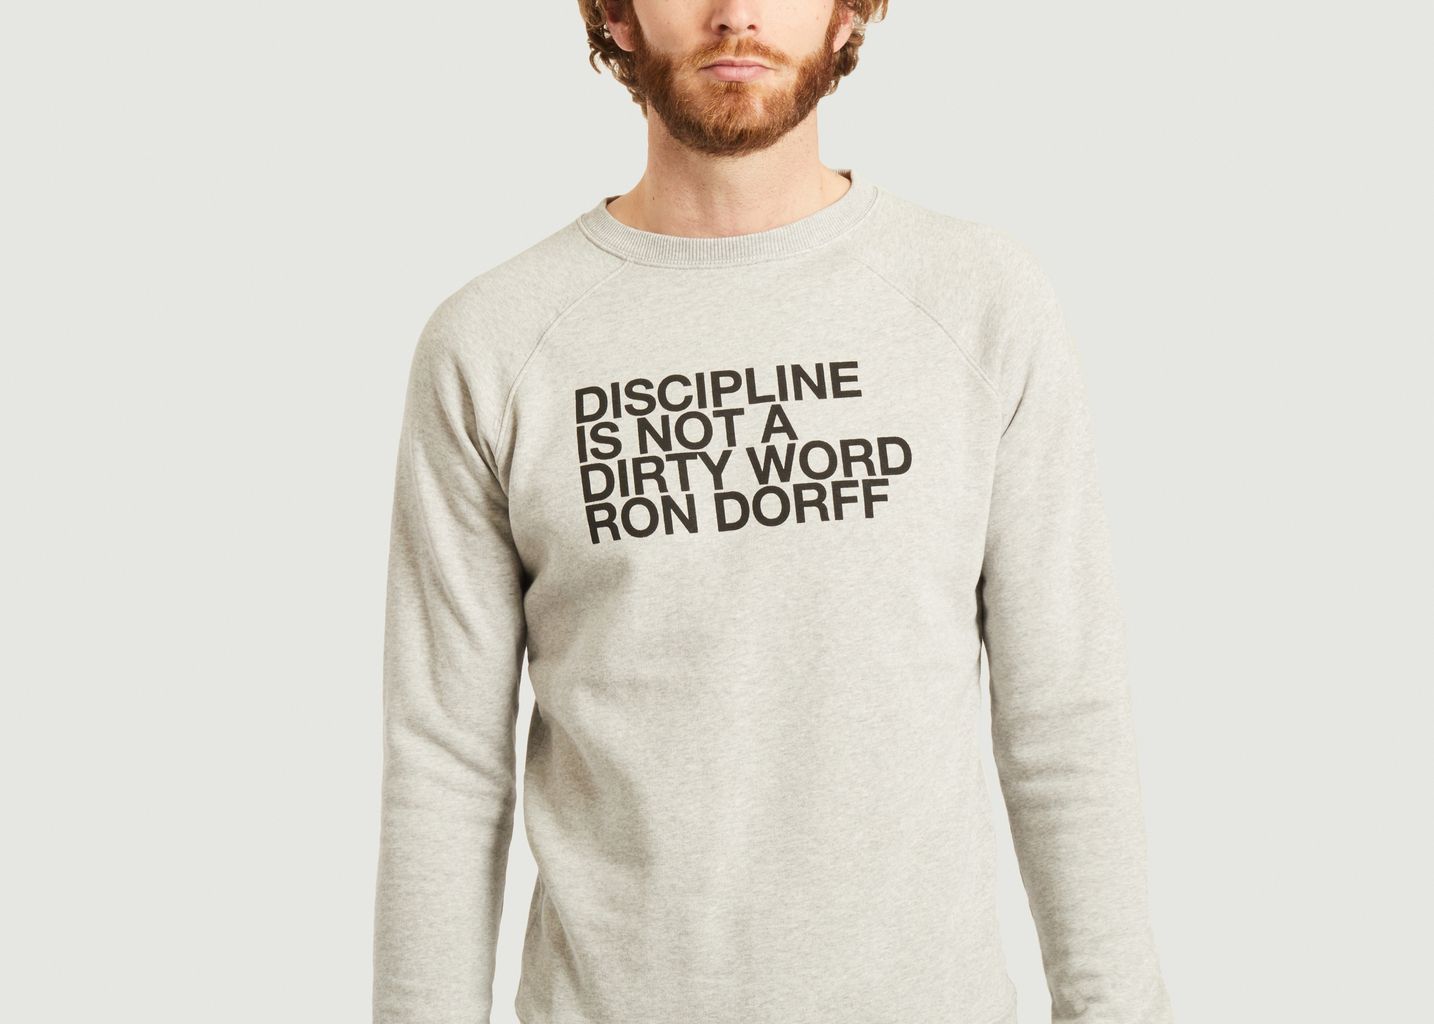 Discipline Sweatshirt - Ron Dorff